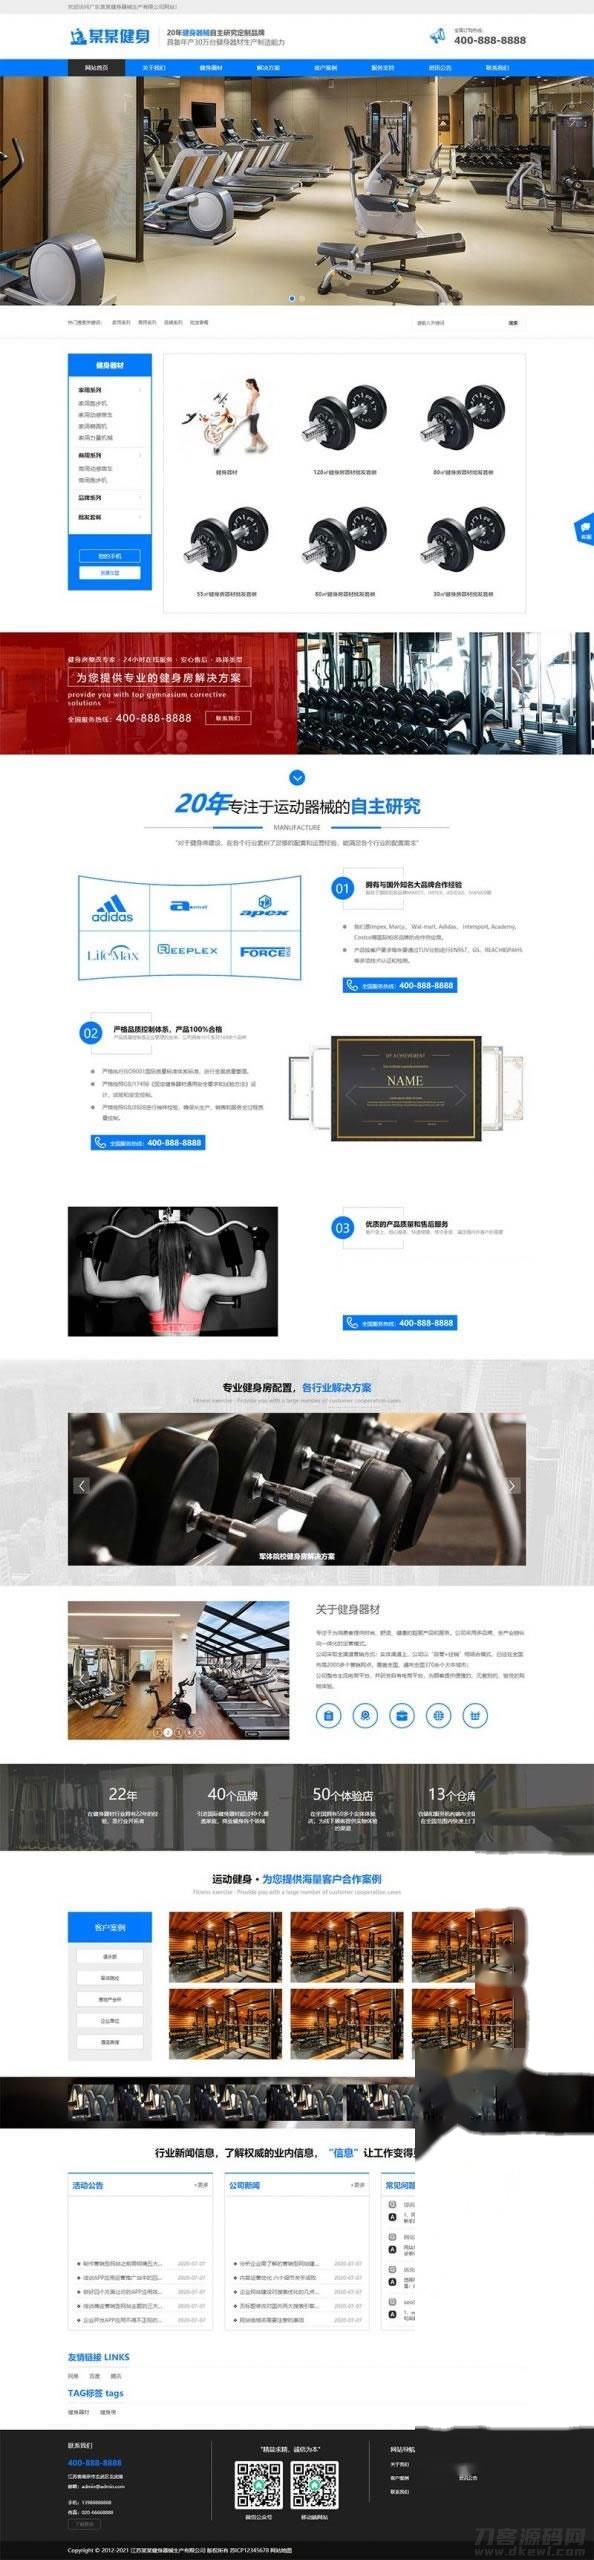 织梦内核蓝色响应式营销型运动健身器械器材企业网站模板 带手机版插图